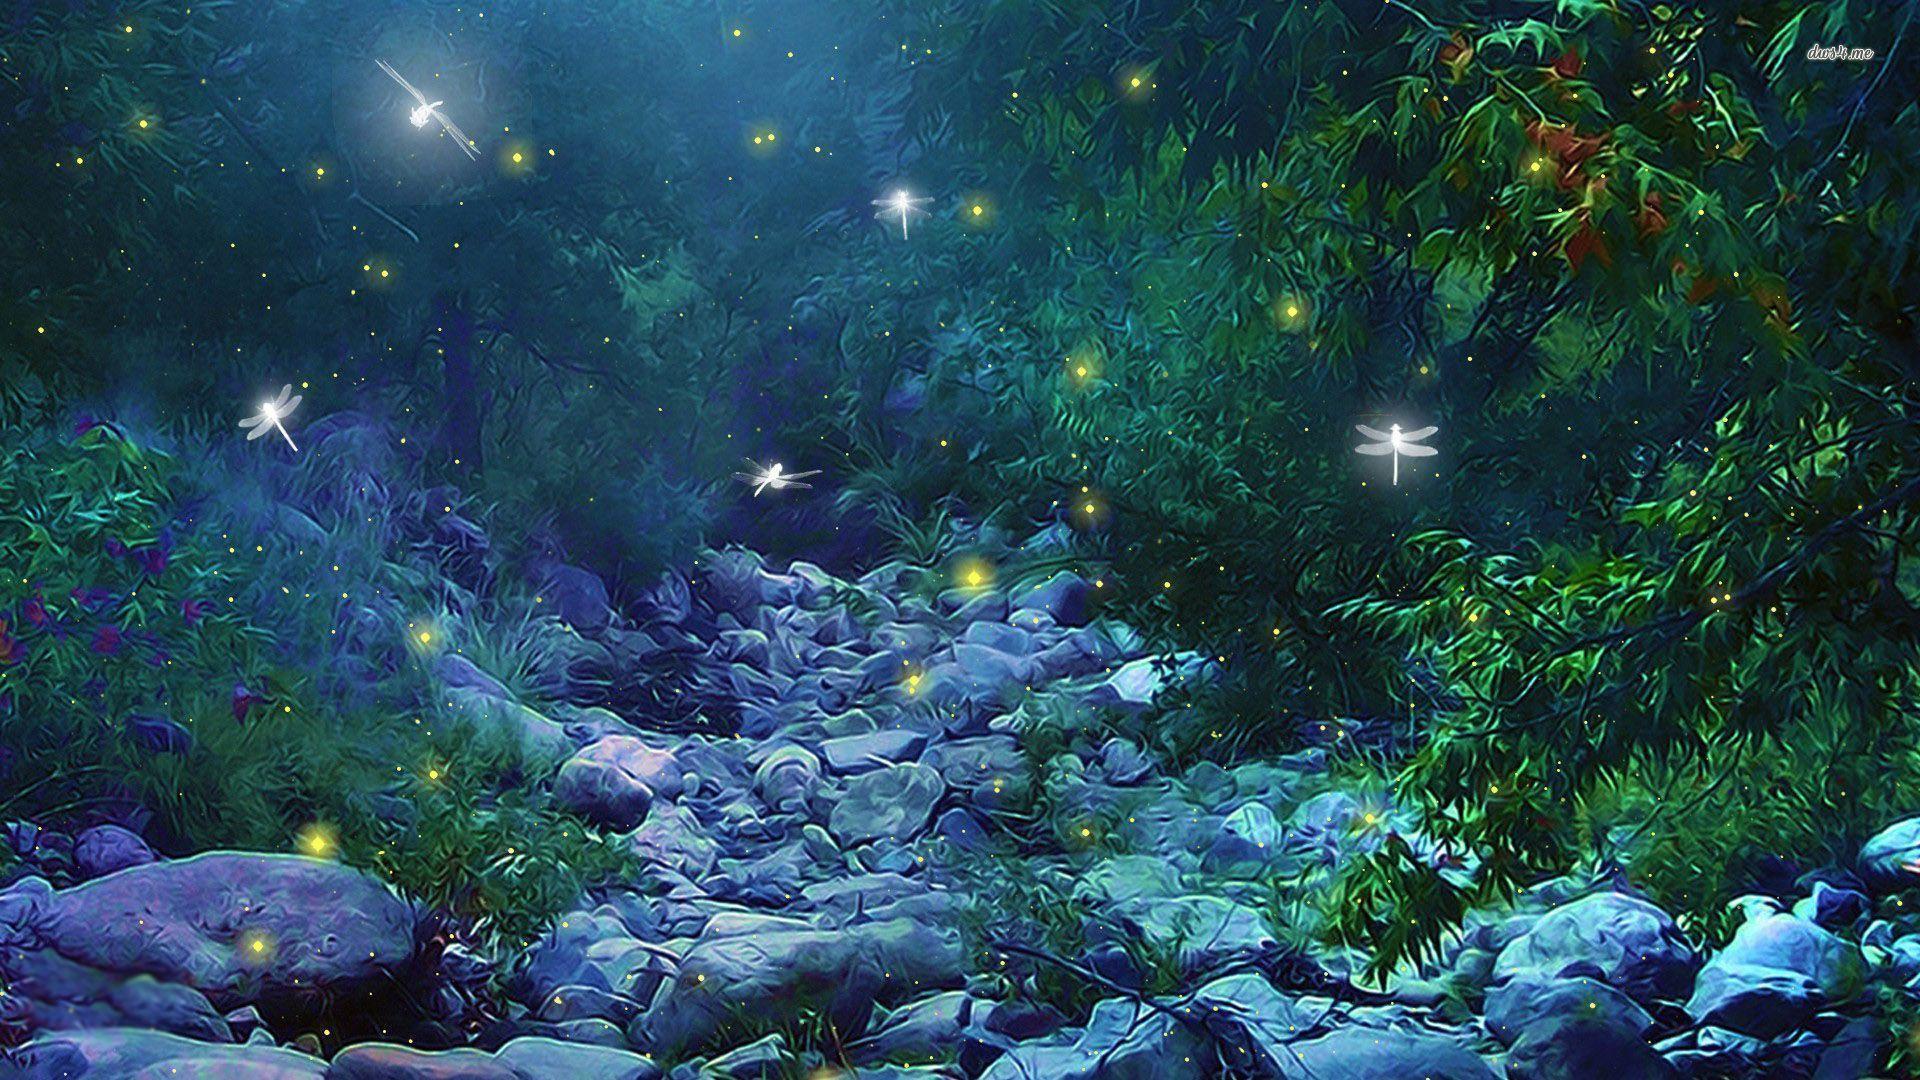 Fireflies in Woods wallpaper wallpaper - #